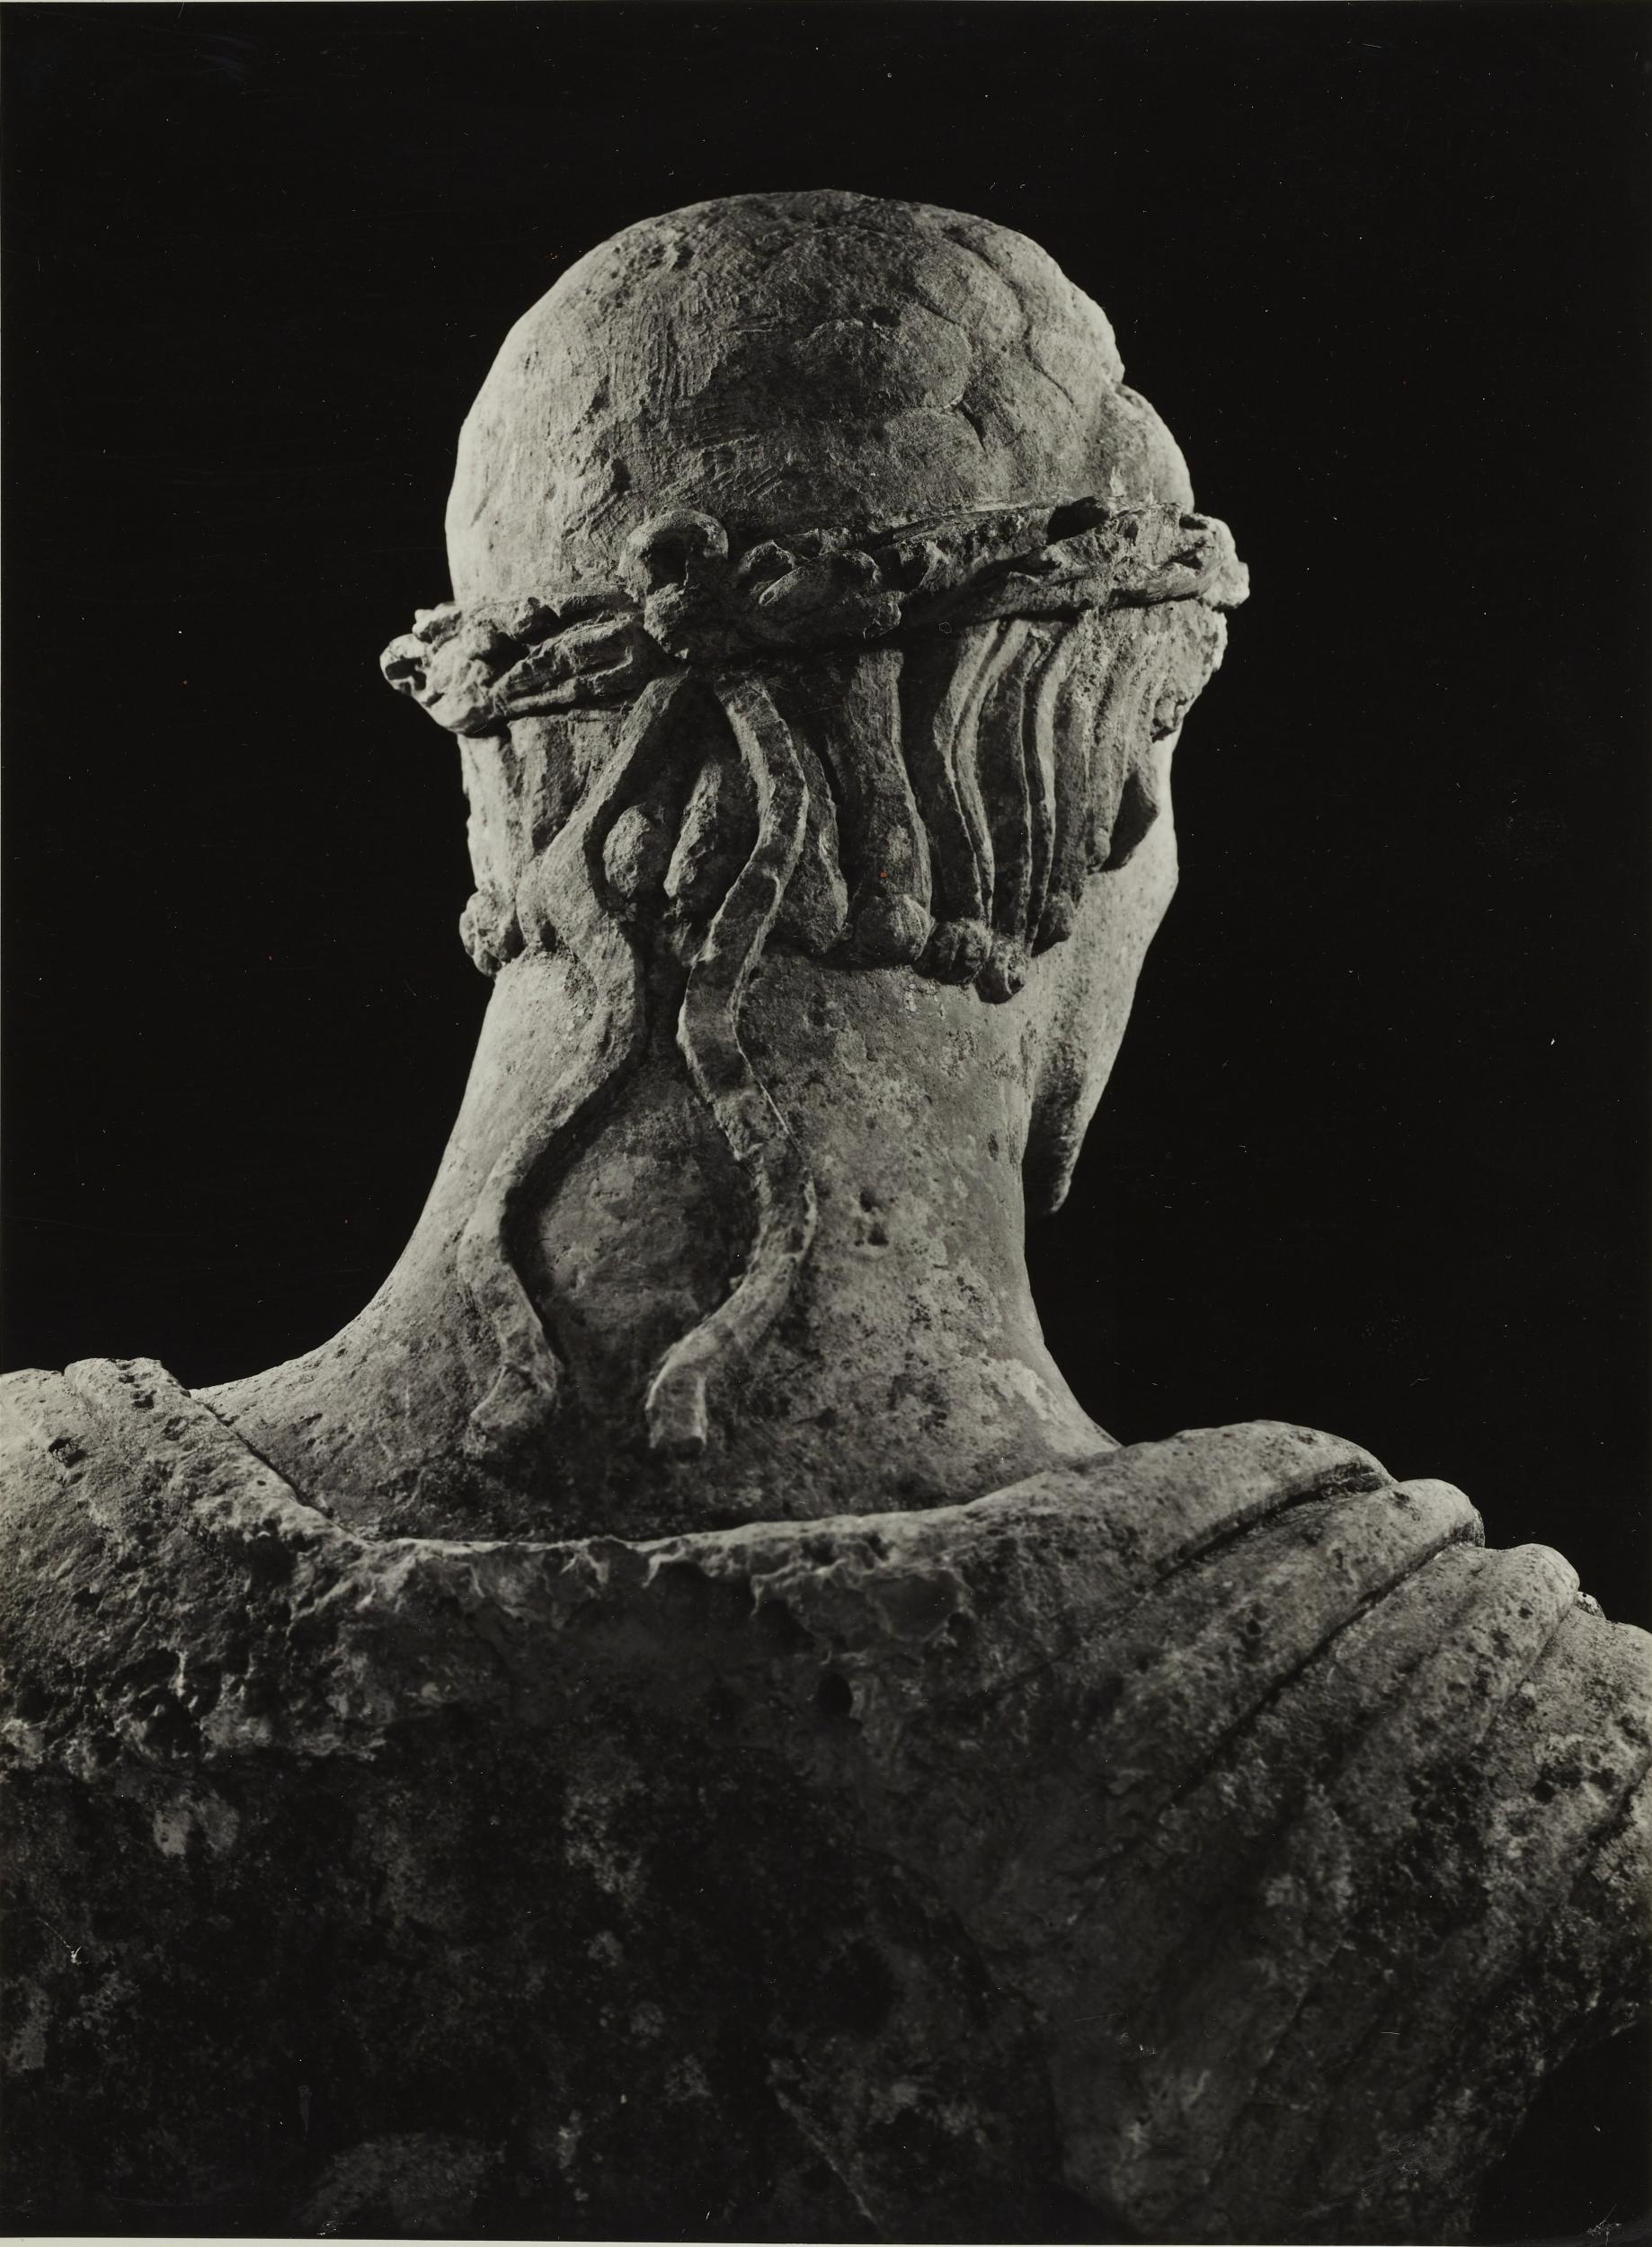 Fotografo non identificato, Barletta - Castello, Museo Civico, busto detto di Federico II, 1953–1954, gelatina ai sali d'argento/carta, MPI6023062